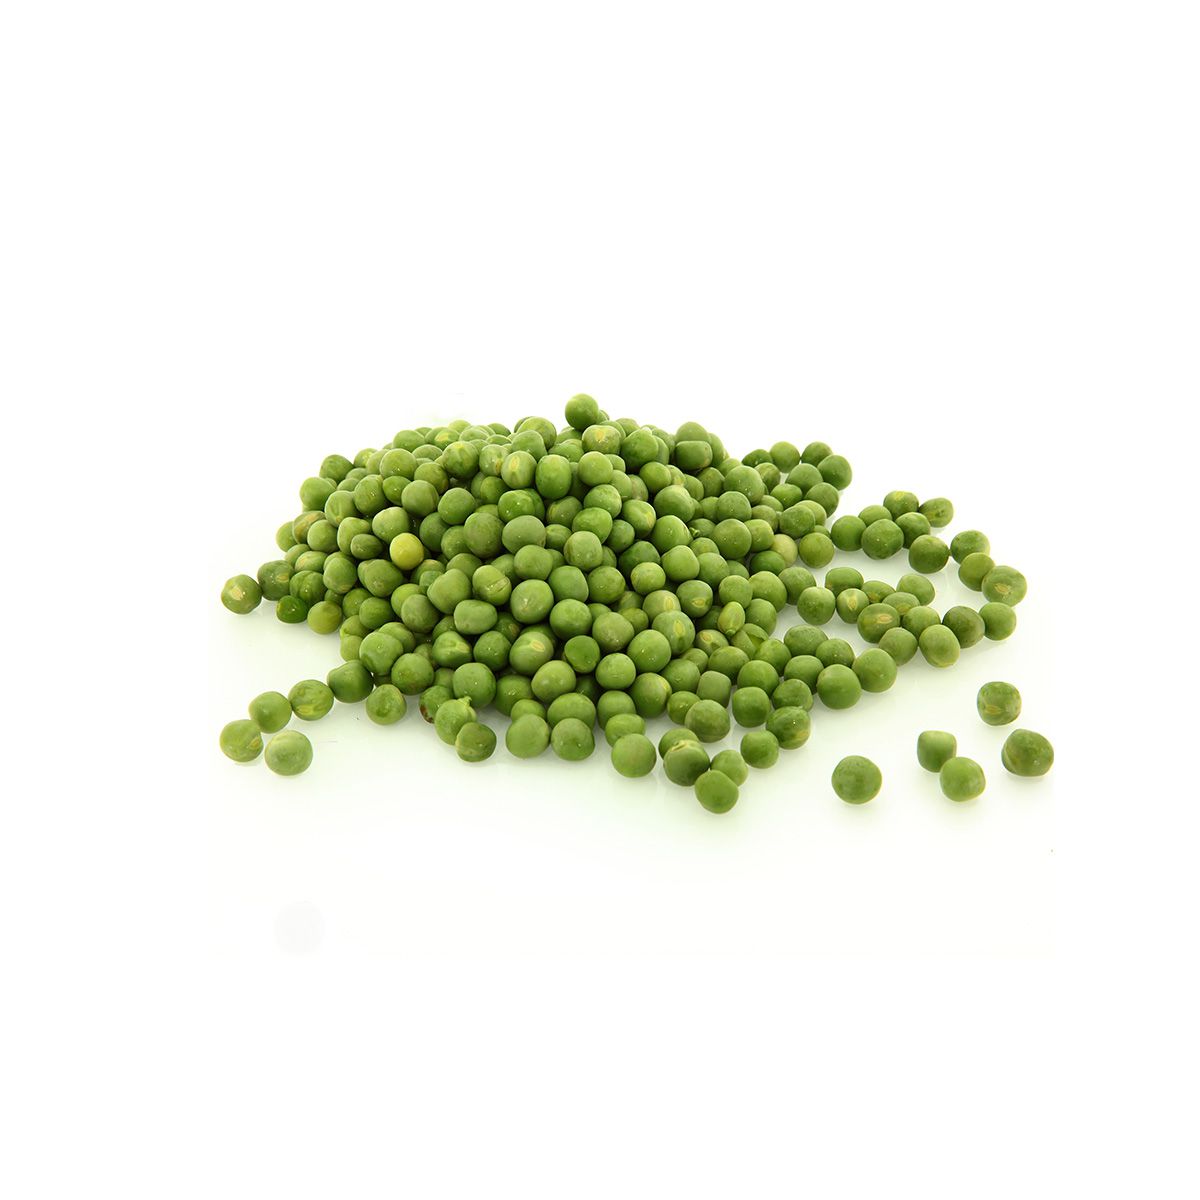 BoxNCase Frozen Peas 2.5 lb